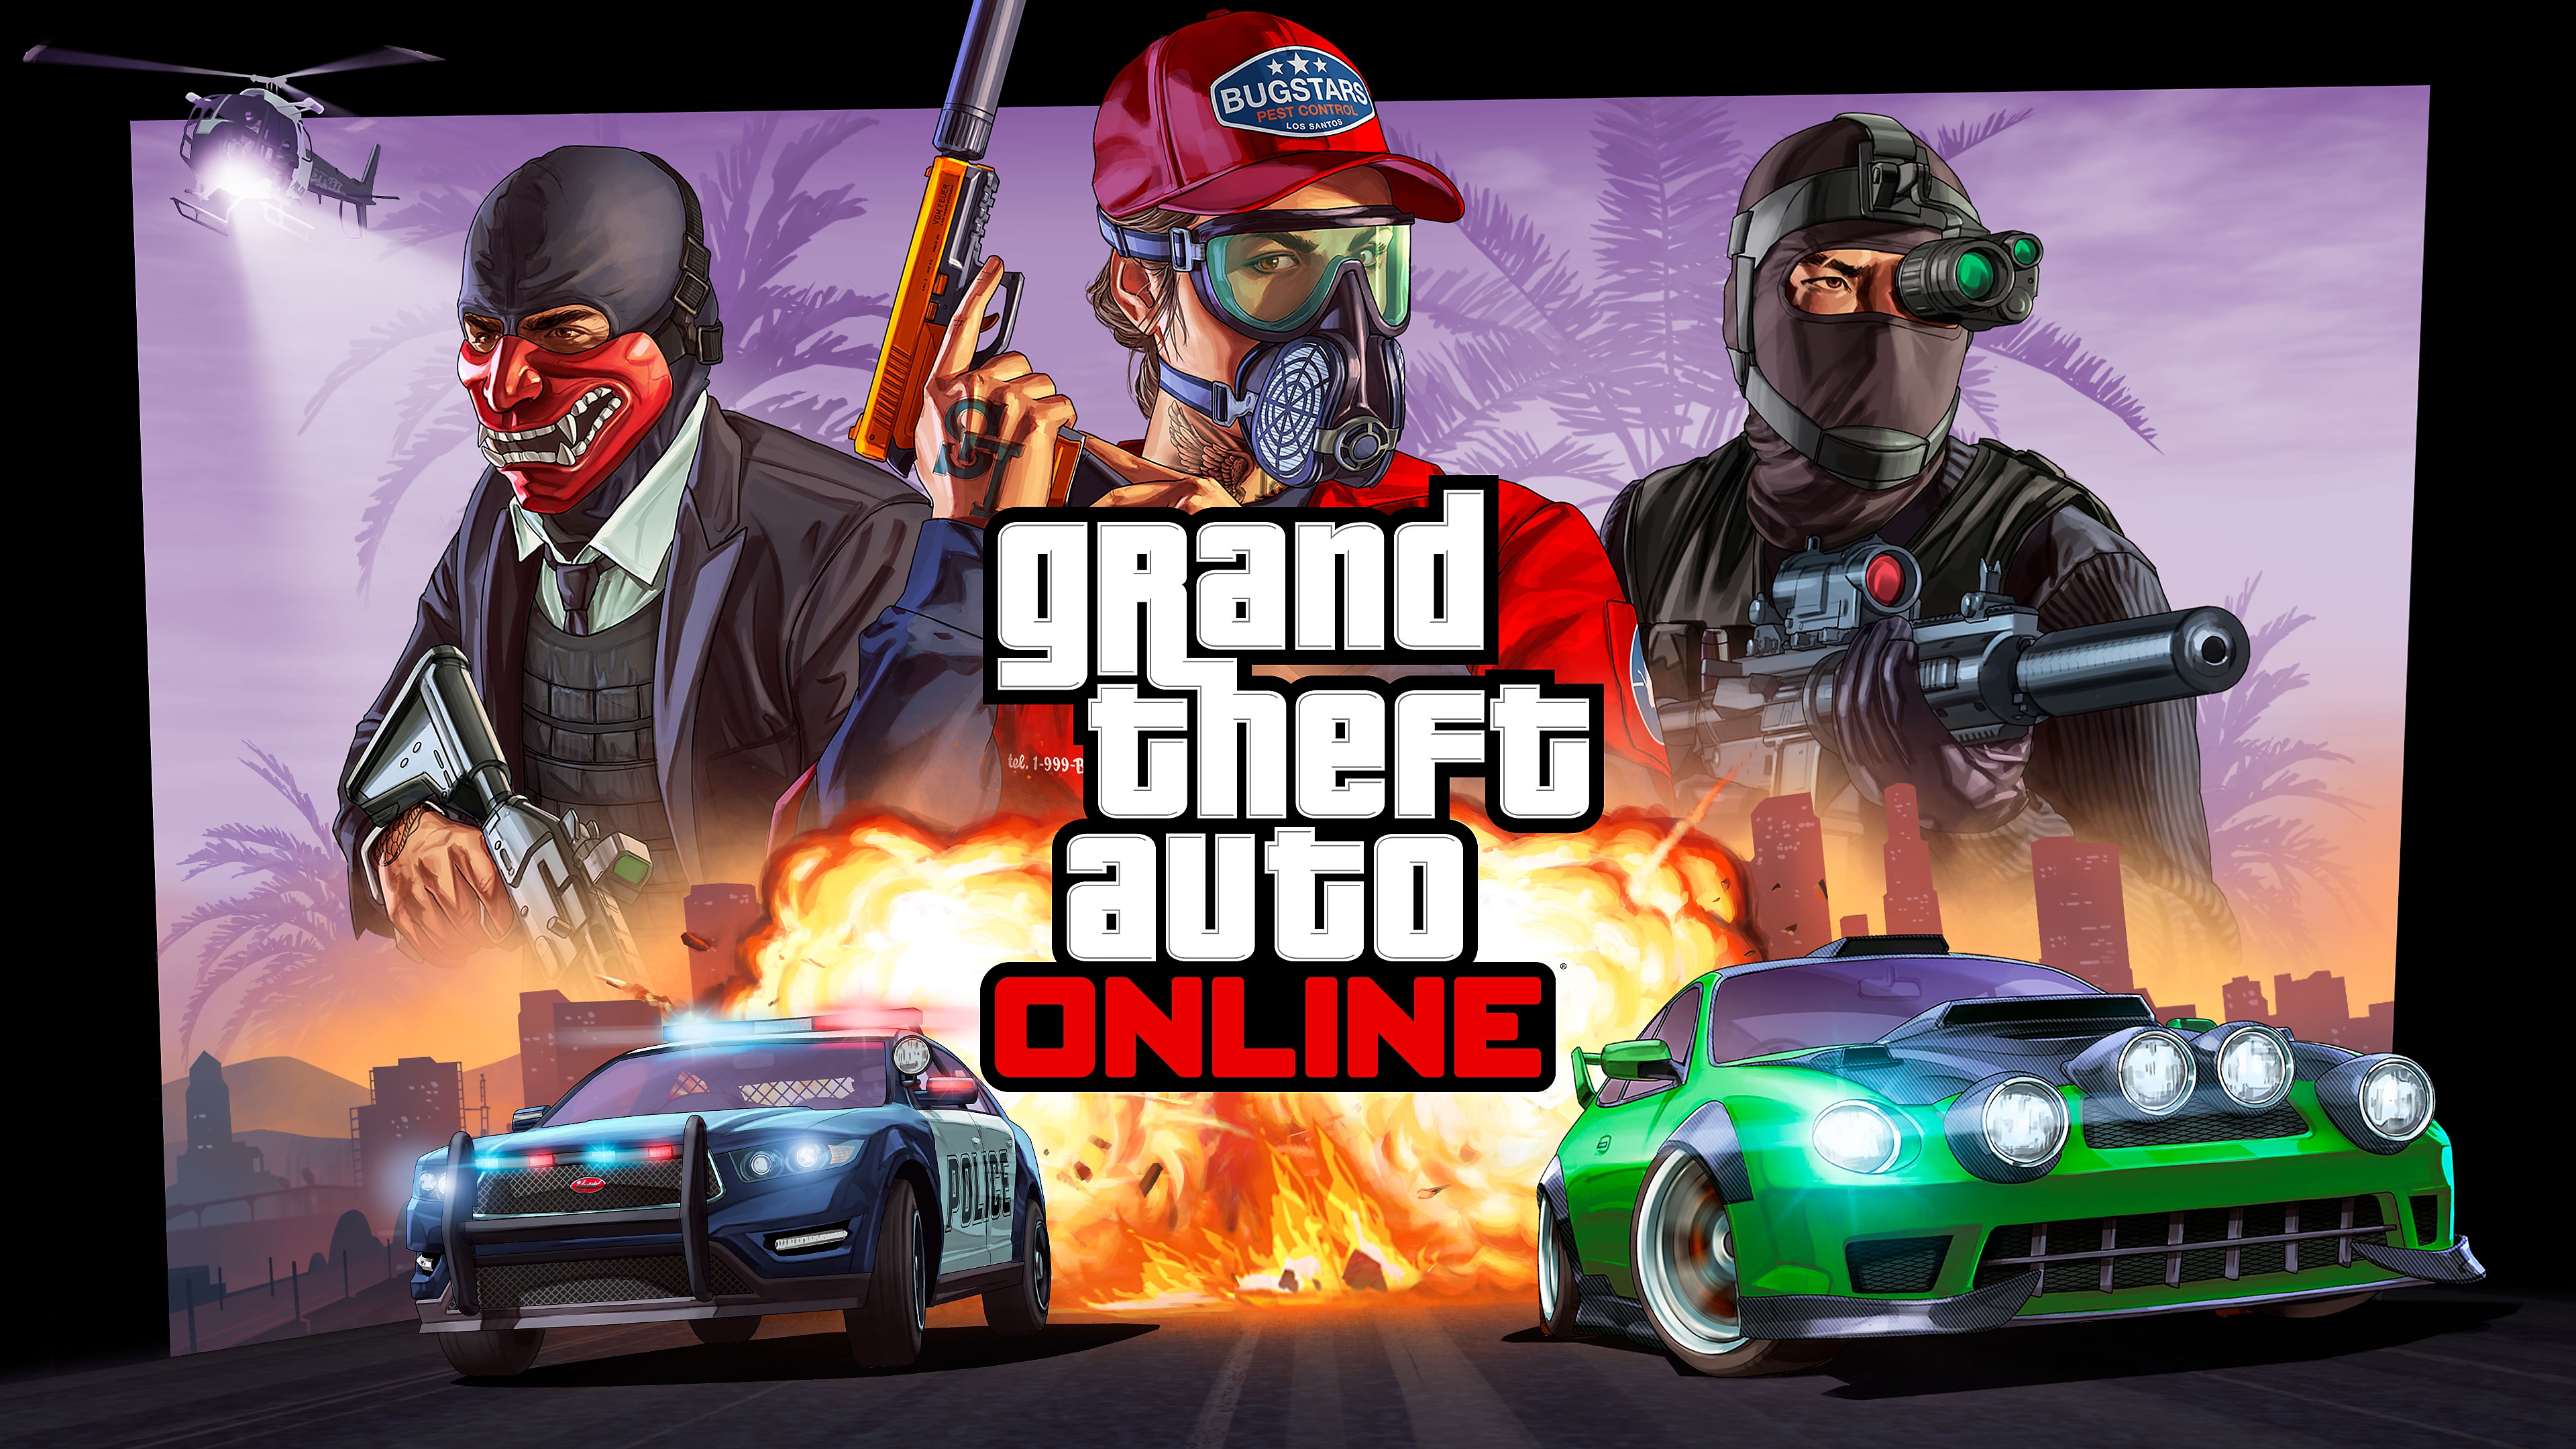 Grand Theft Auto 온라인 키 아트, 경찰차에 쫓기는 스트리트 레이싱 차량에 탑승한 캐릭터 세 명